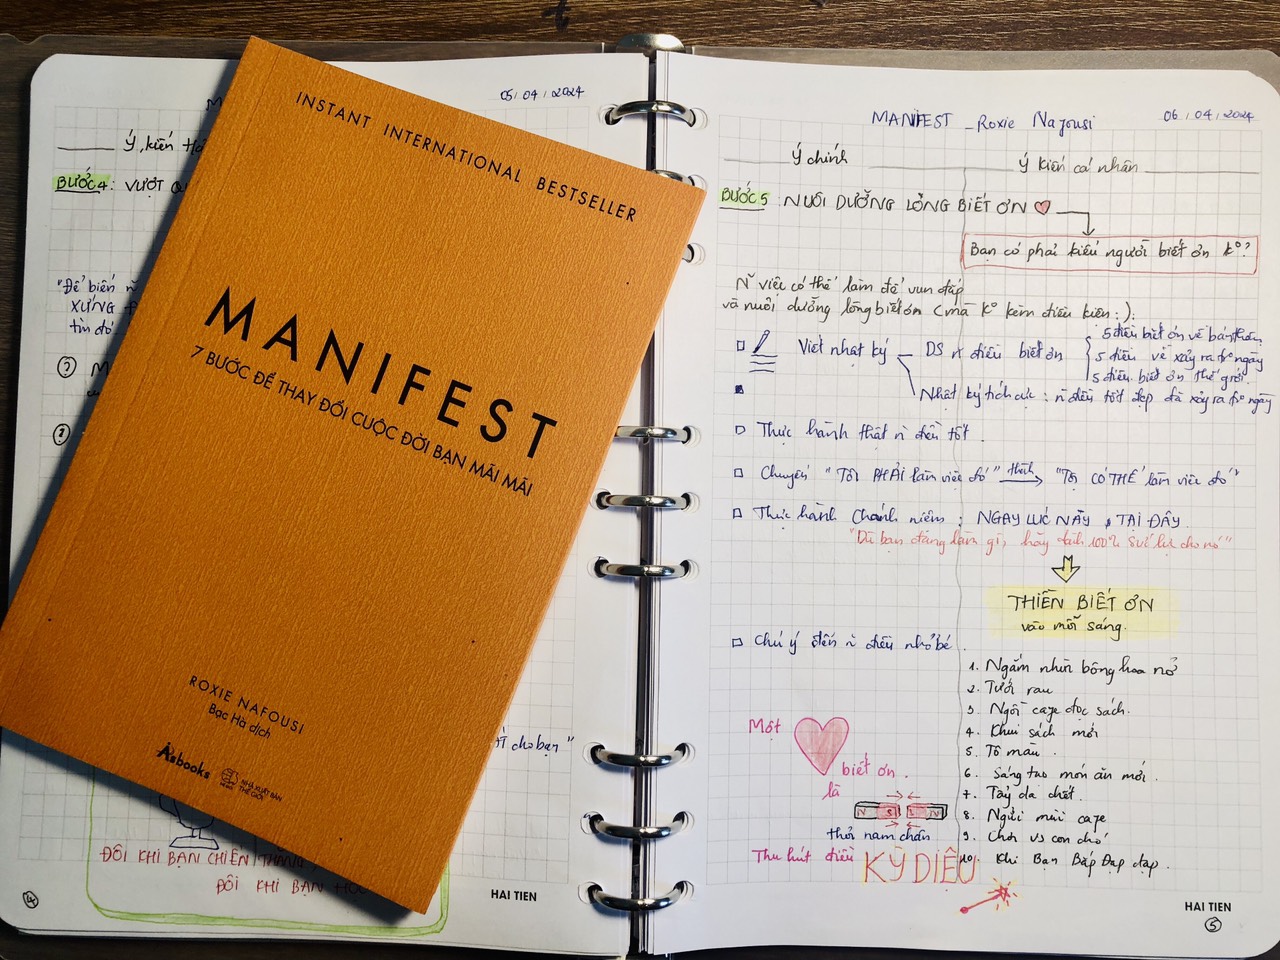 Review sách: Manifest - 7 Bước để thay đổi cuộc đời bạn mãi mãi